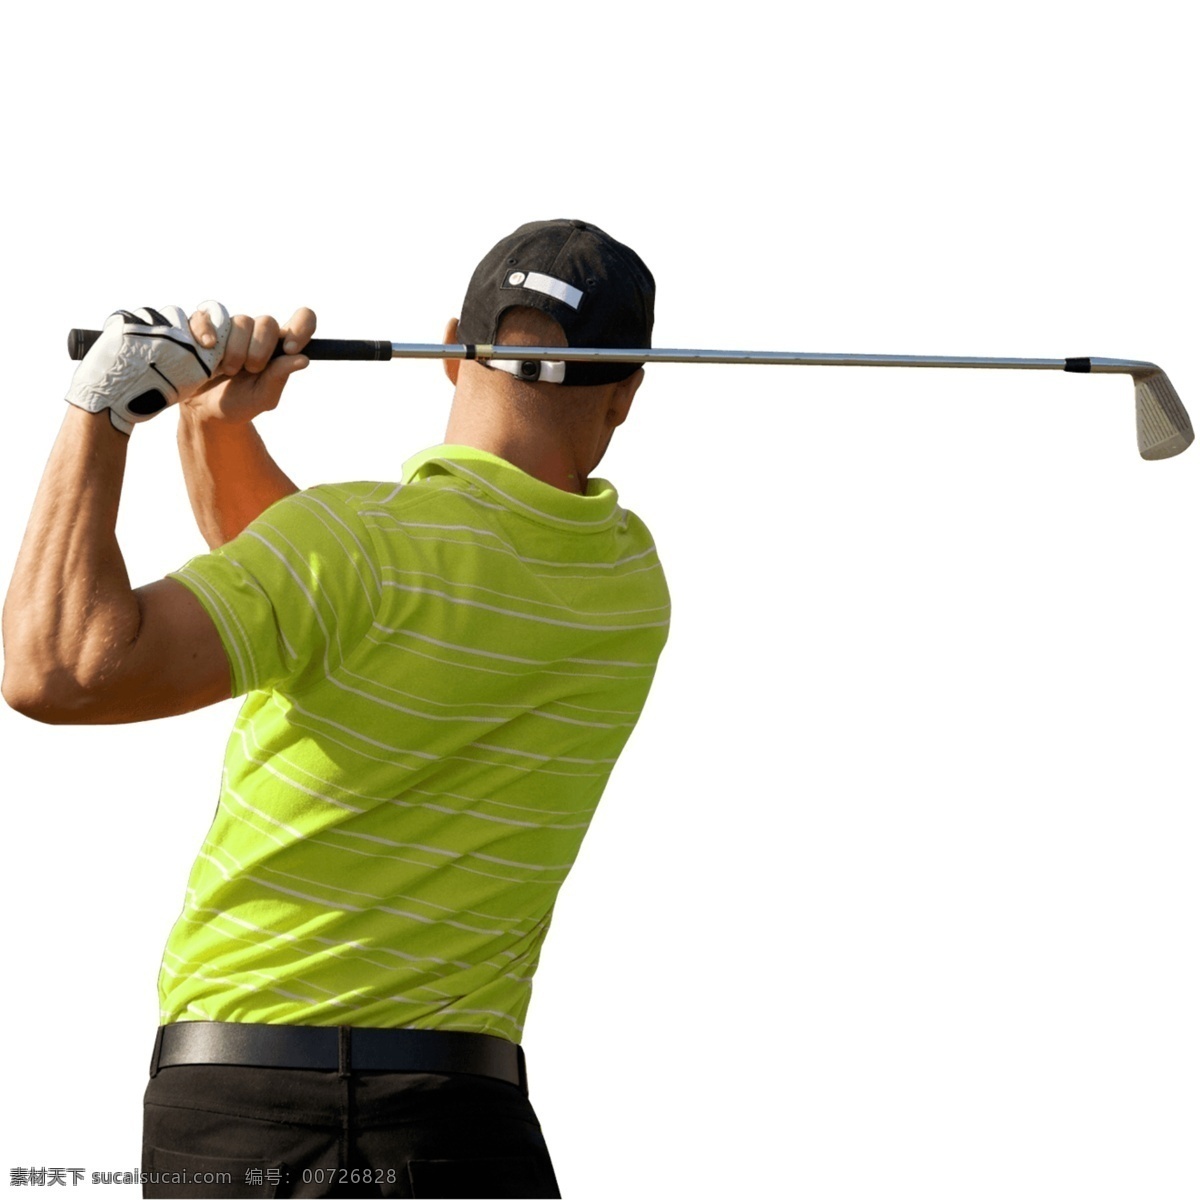 高尔夫 球杆 黄 衣 男 免 抠 透明 男人 图形 元素 高尔夫图片 高尔夫球运动 高尔夫素材 高尔夫元素